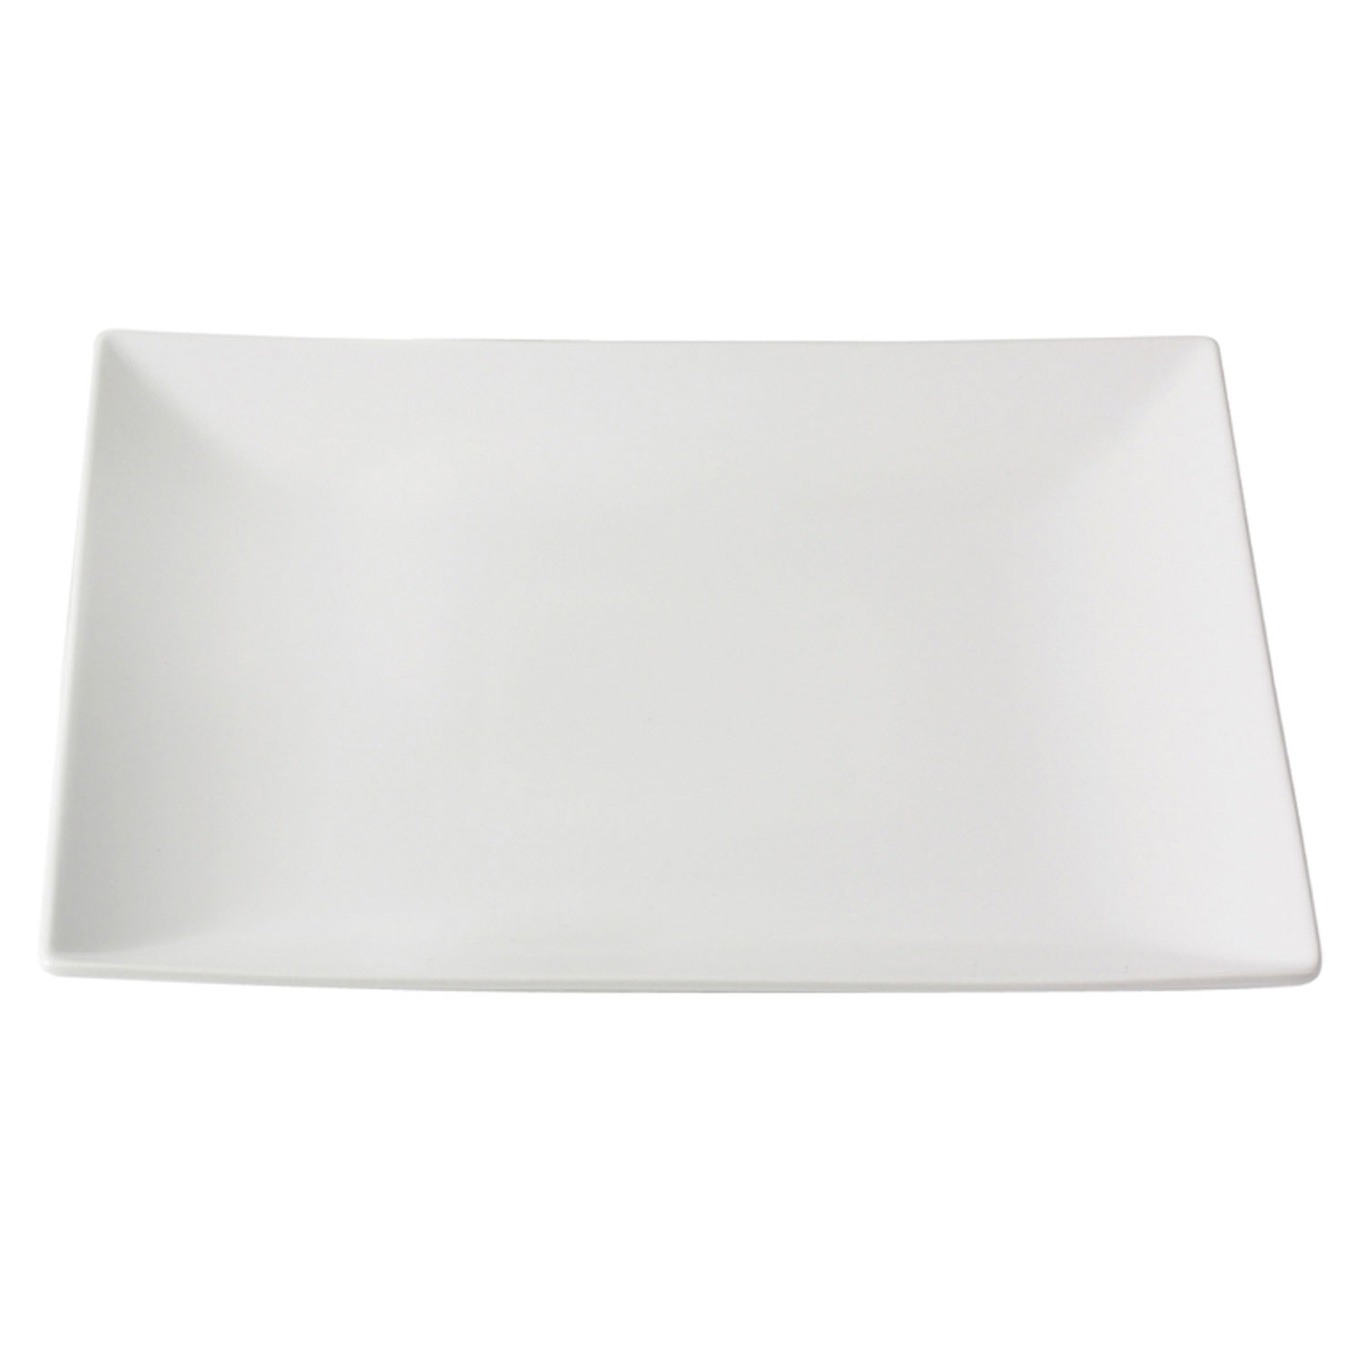 Quadro Teller 26x26 cm, Weiß